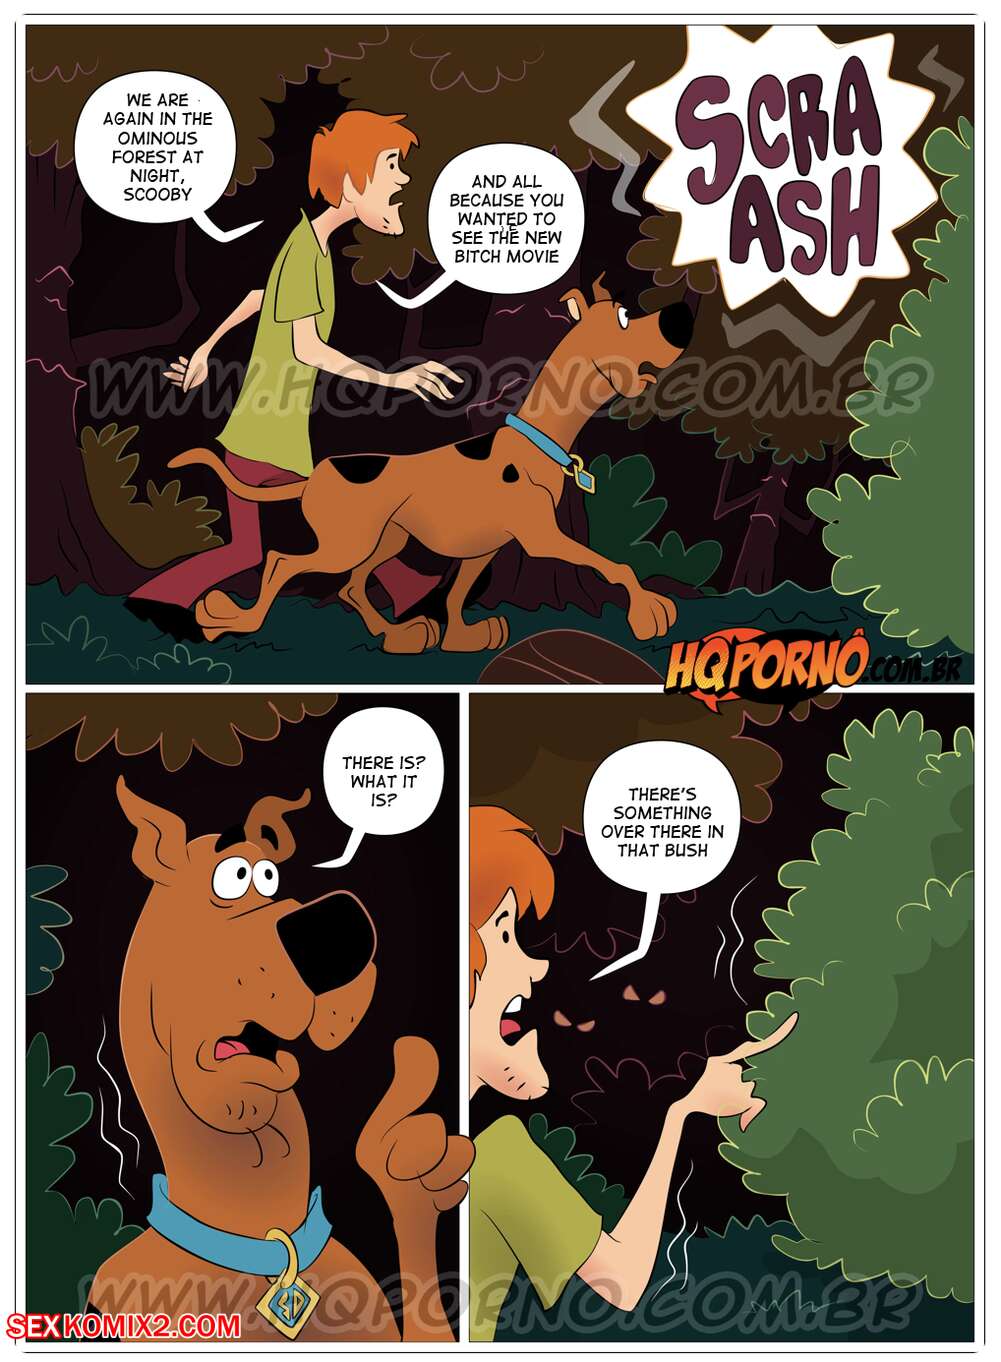 âœ…ï¸ Porn comic Scooby Doo. Scooby Cool. Part 4. Hqporno Sex comic the  mission, Fred | Porn comics in English for adults only | sexkomix2.com